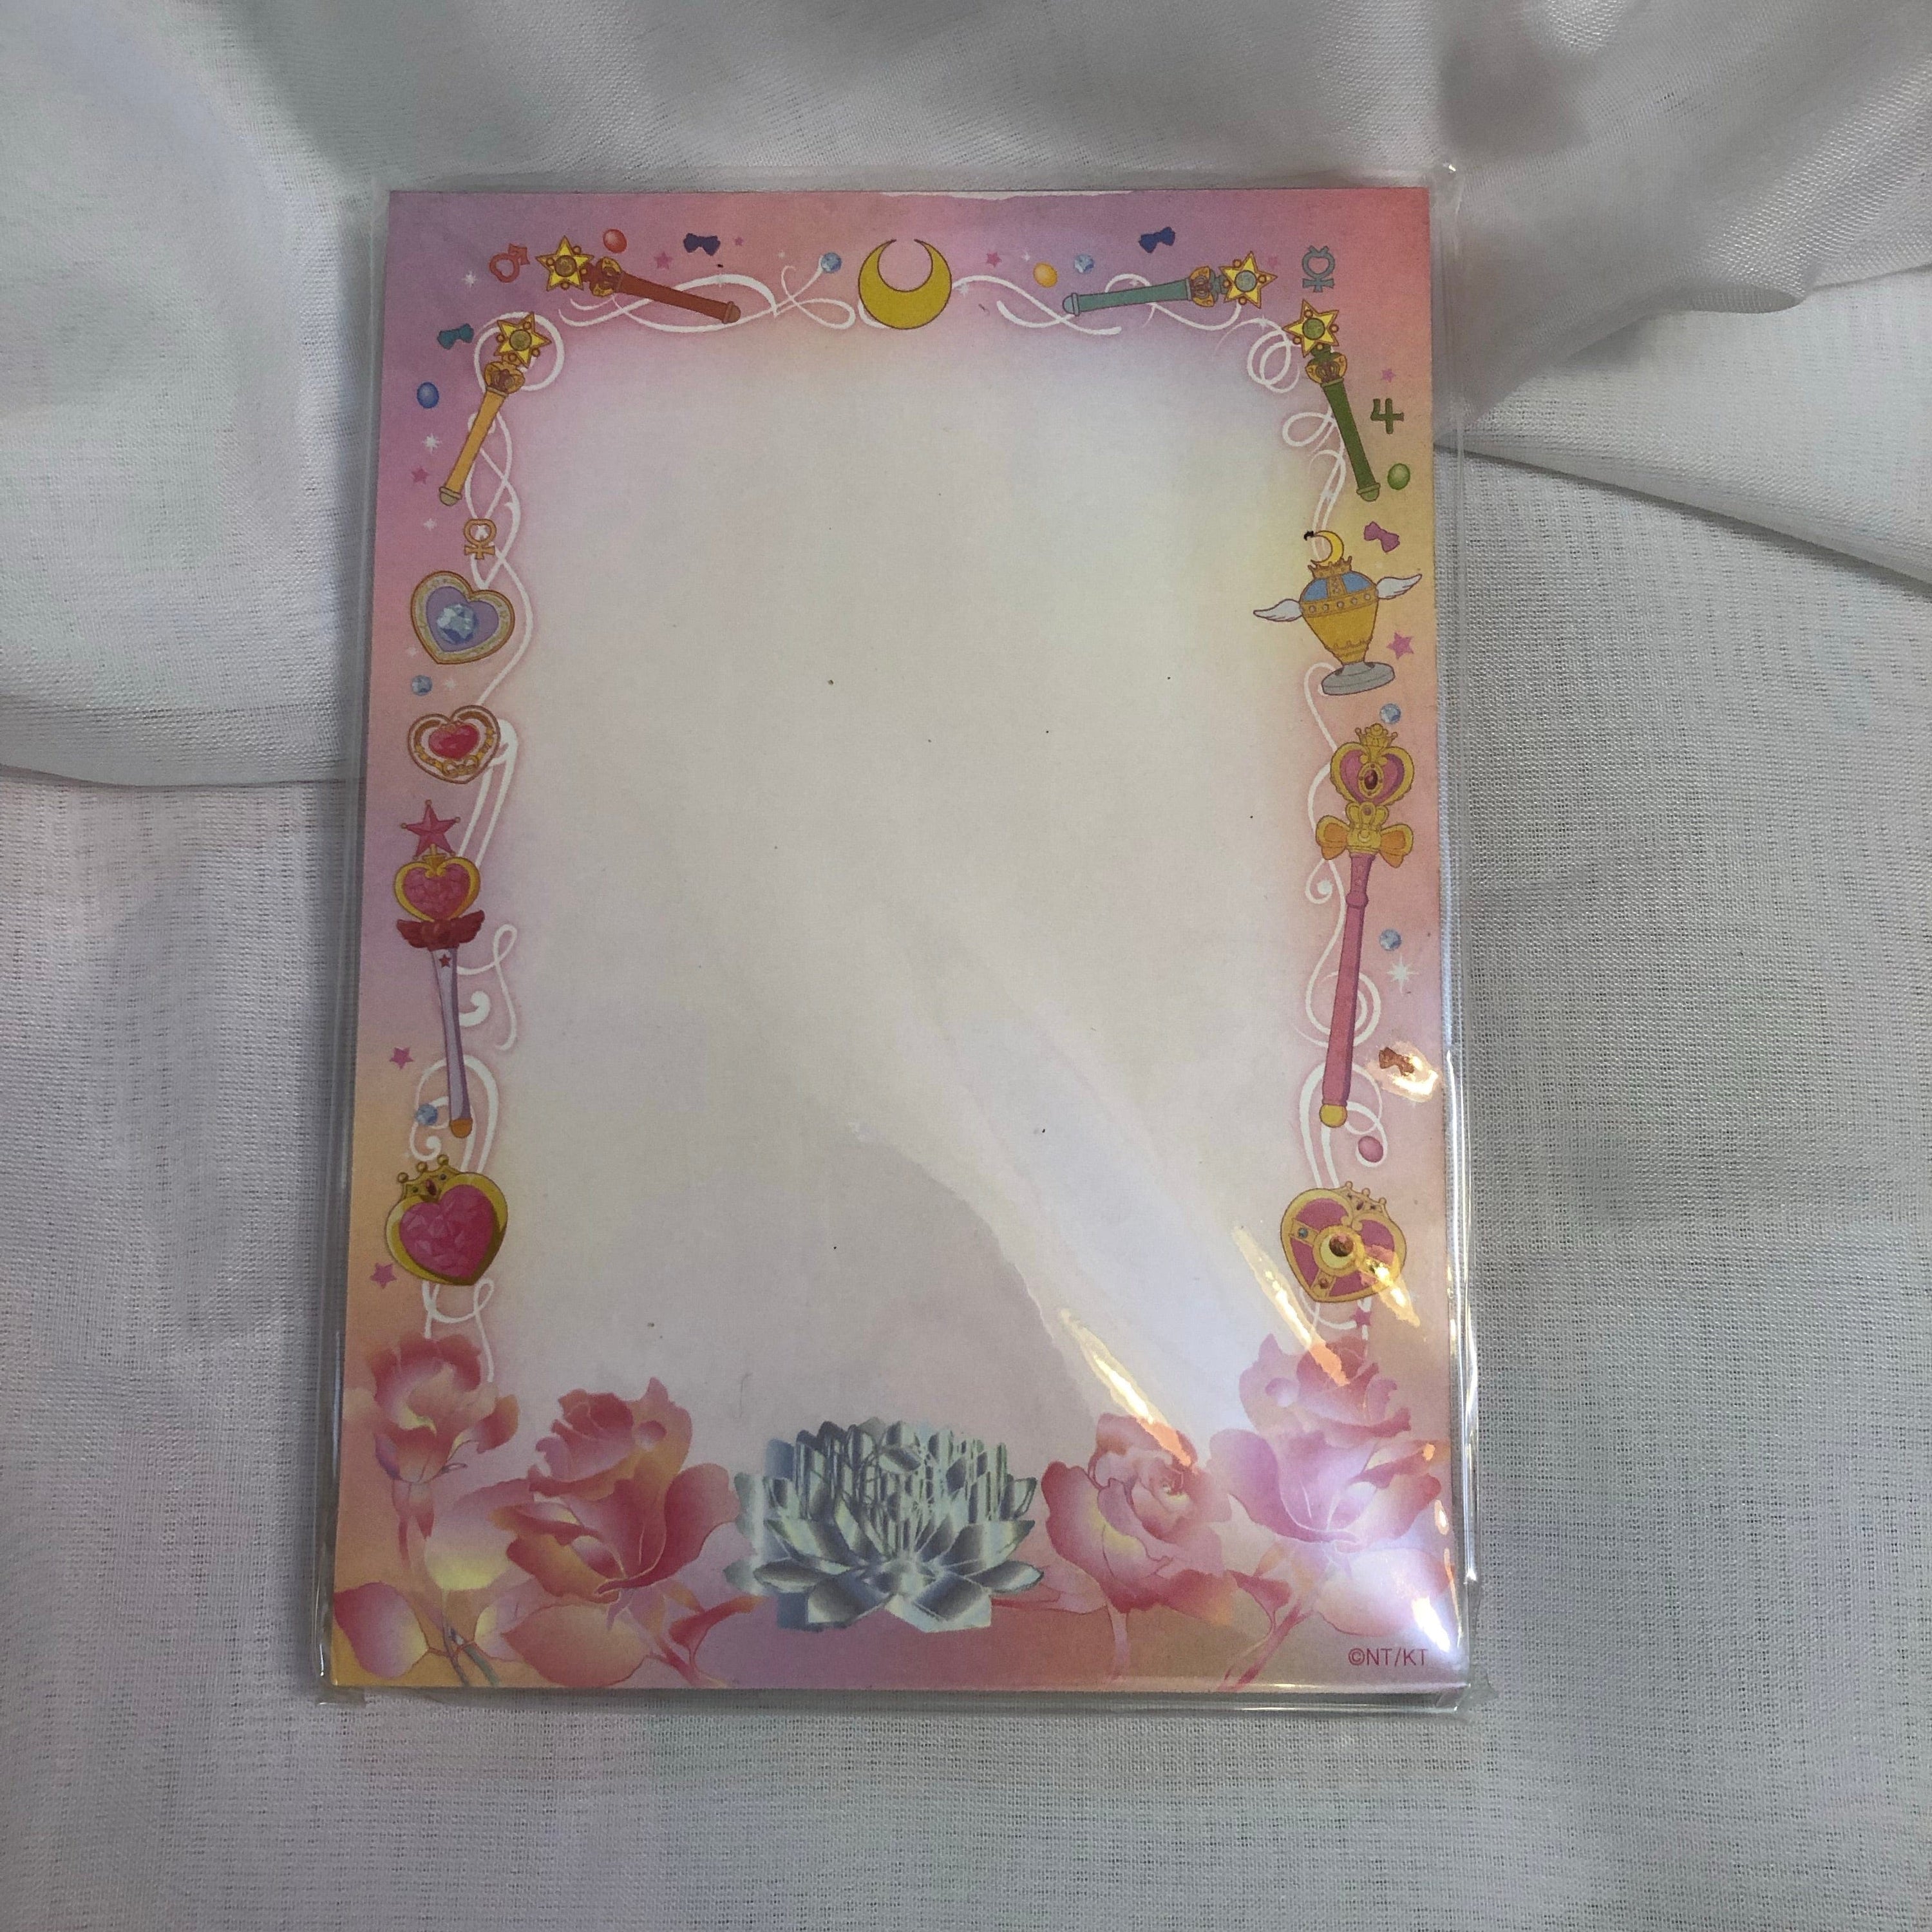 BeeCrazee SAILOR MOON Crystal MEMO PAD Transformation Devices Kawaii Gifts 75215541